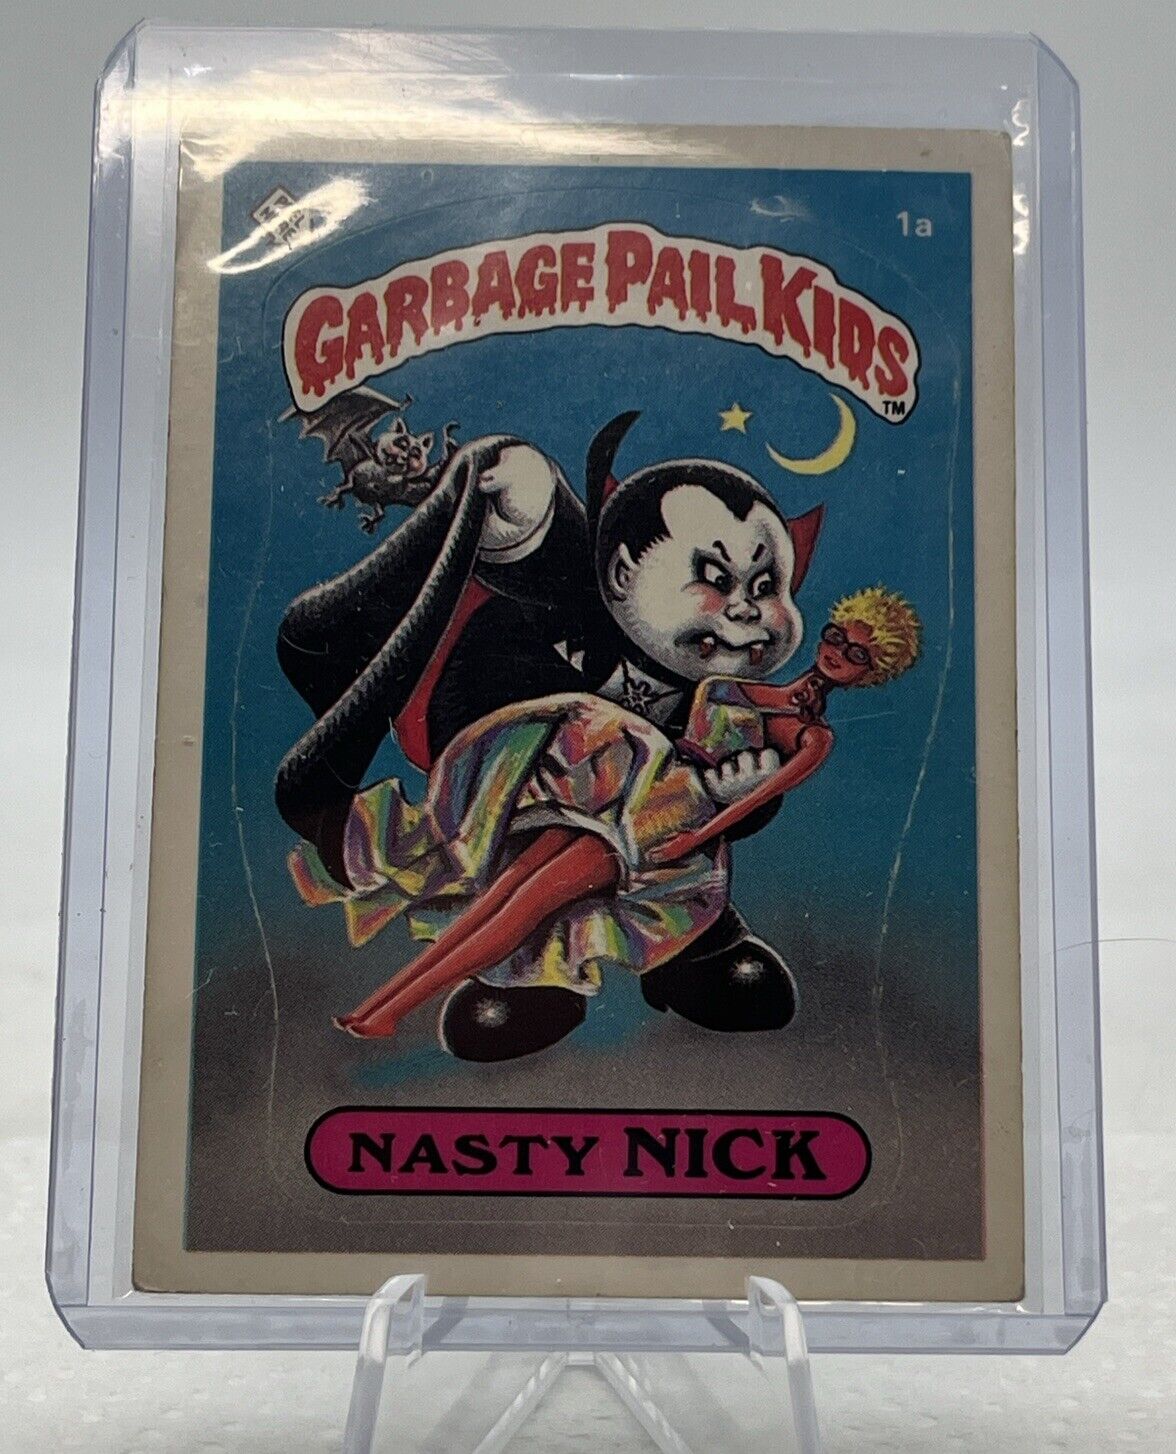 1985 Garbage Pail Kids Series 1 Nasty Nick #1a Matte